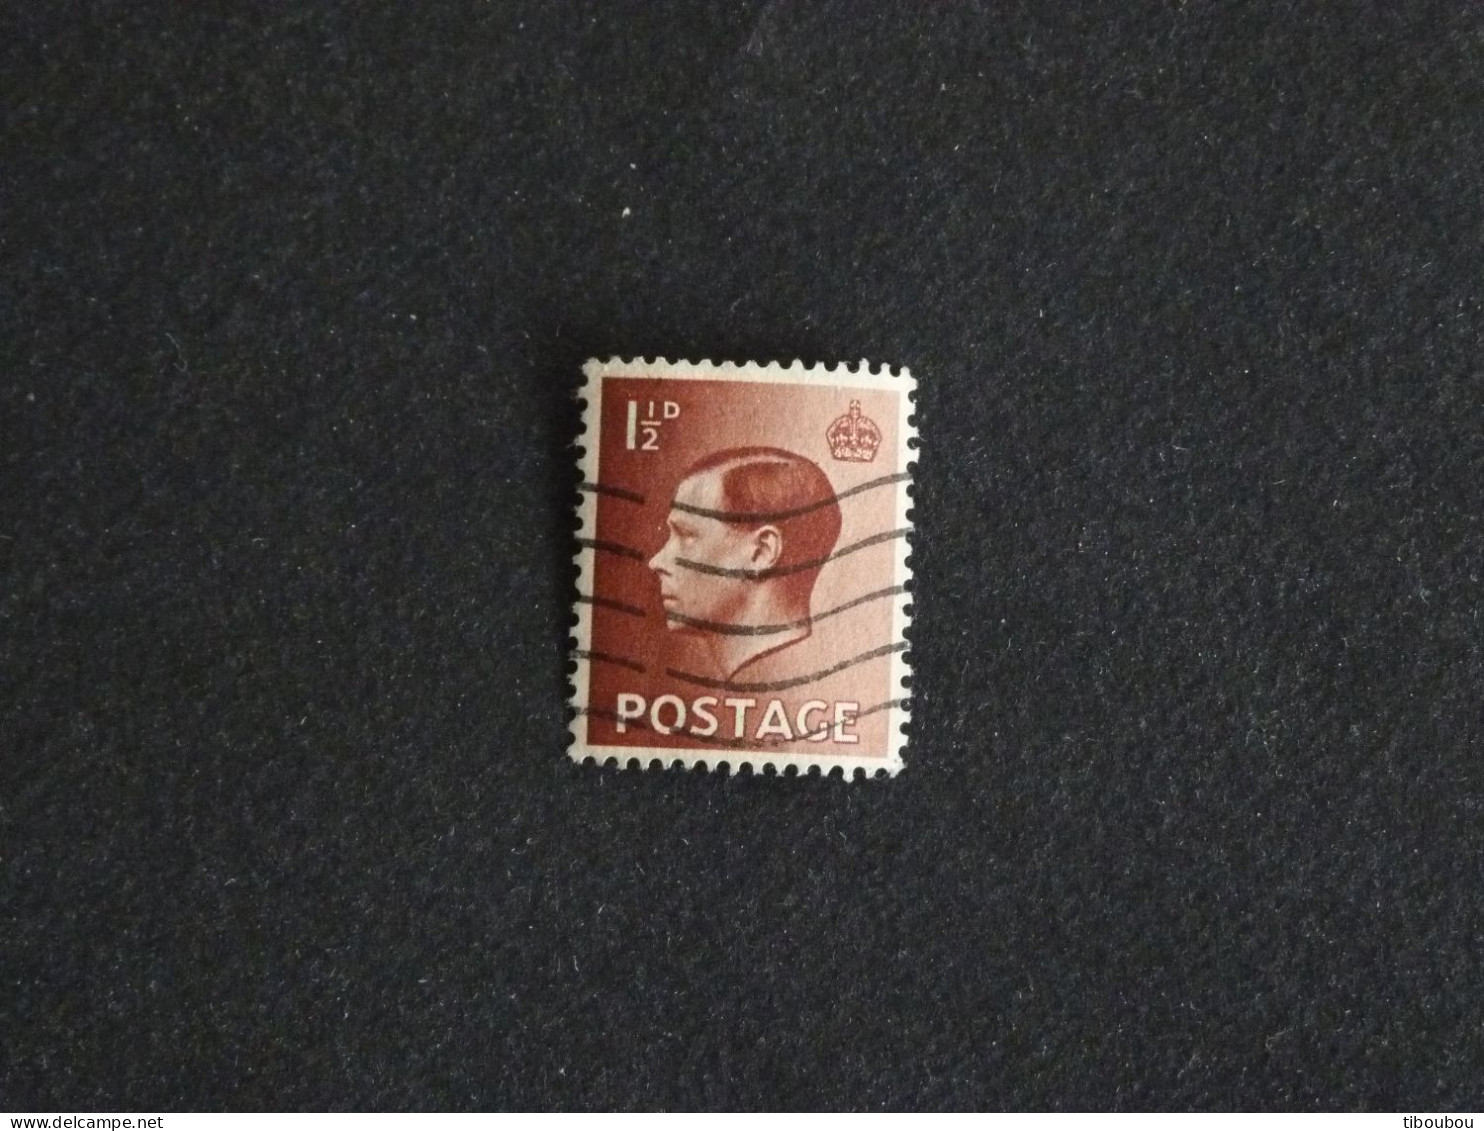 GRANDE BRETAGNE ROYAUME UNI GB UK YT 207 OBLITERE - ROI KING EDOUARD EDWARD VIII - Used Stamps